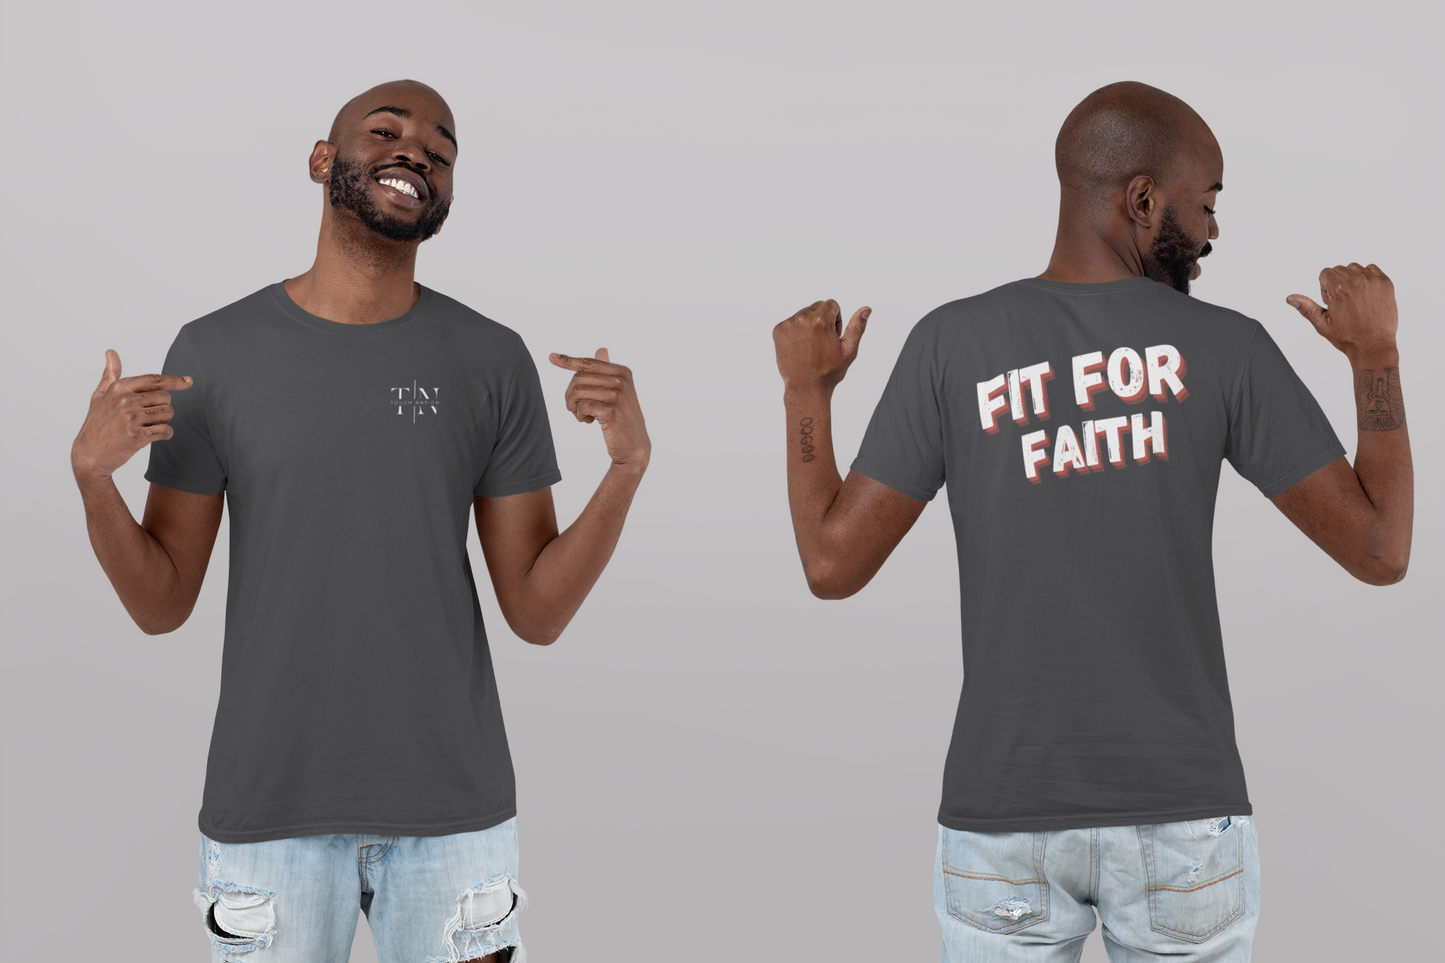 Fit For Faith